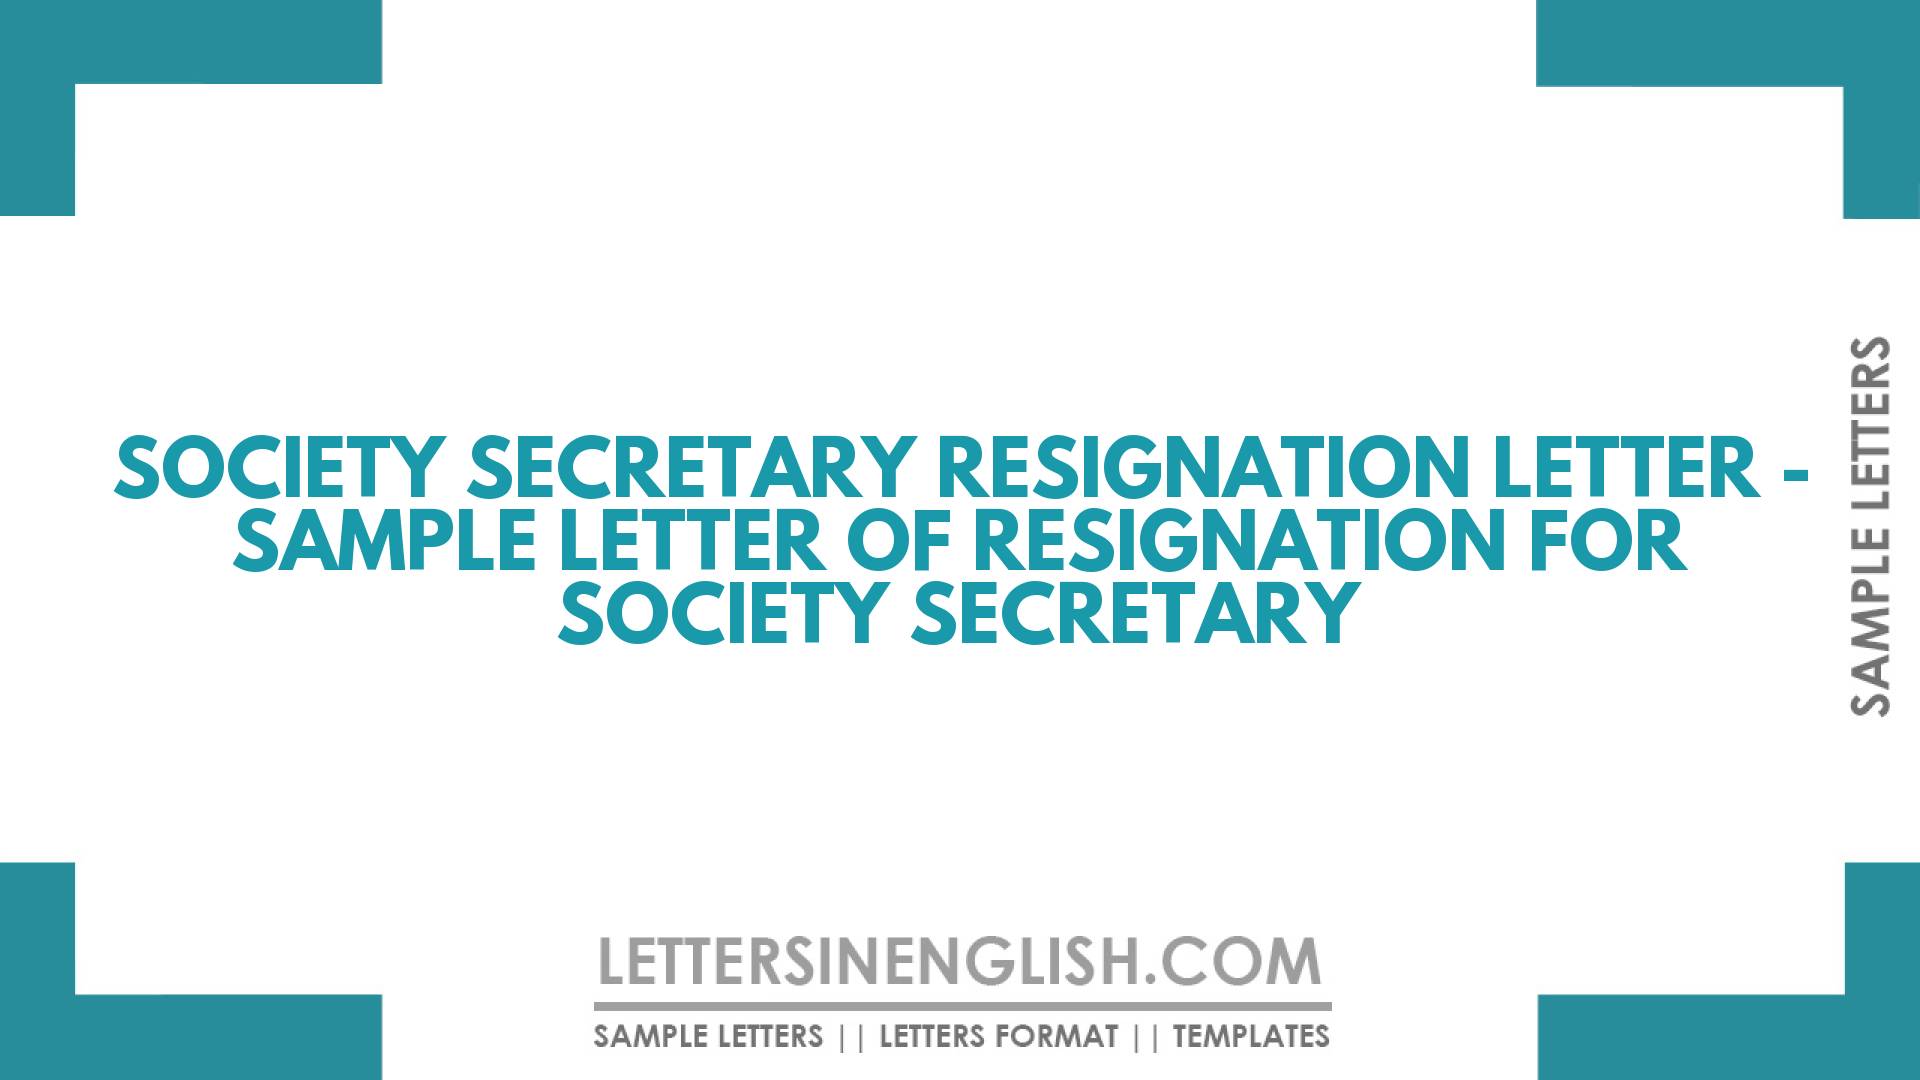 Society Secretary Resignation Letter – Sample Letter of Resignation for Society Secretary